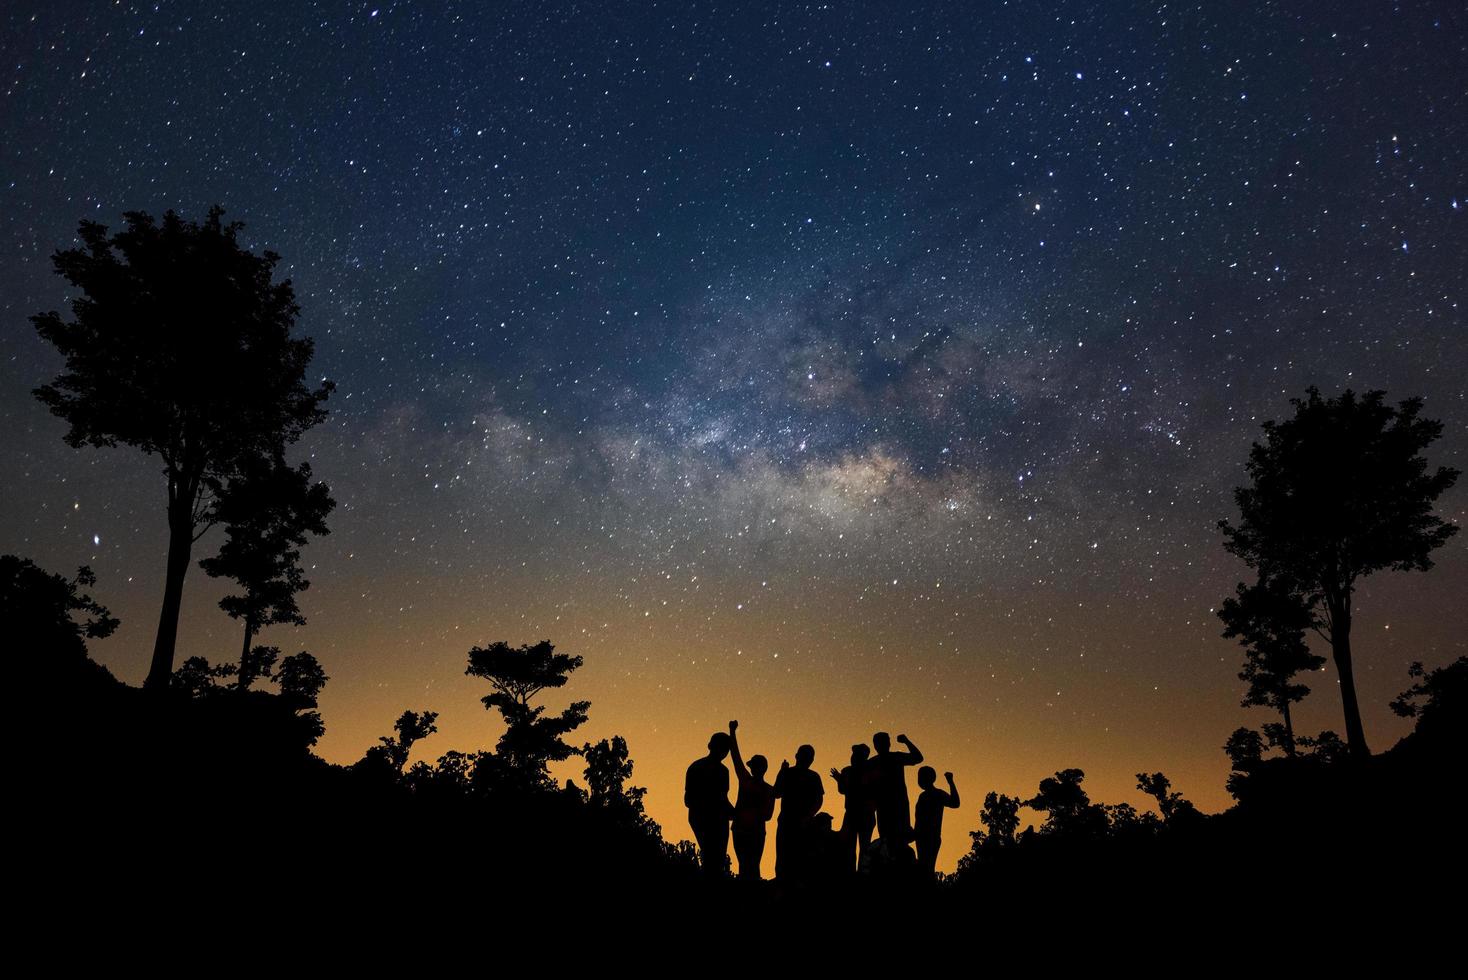 landschap met melkachtig manier, nacht lucht met sterren en silhouet van gelukkig mensen staand in Woud, lang blootstelling fotograaf, met korrel. foto